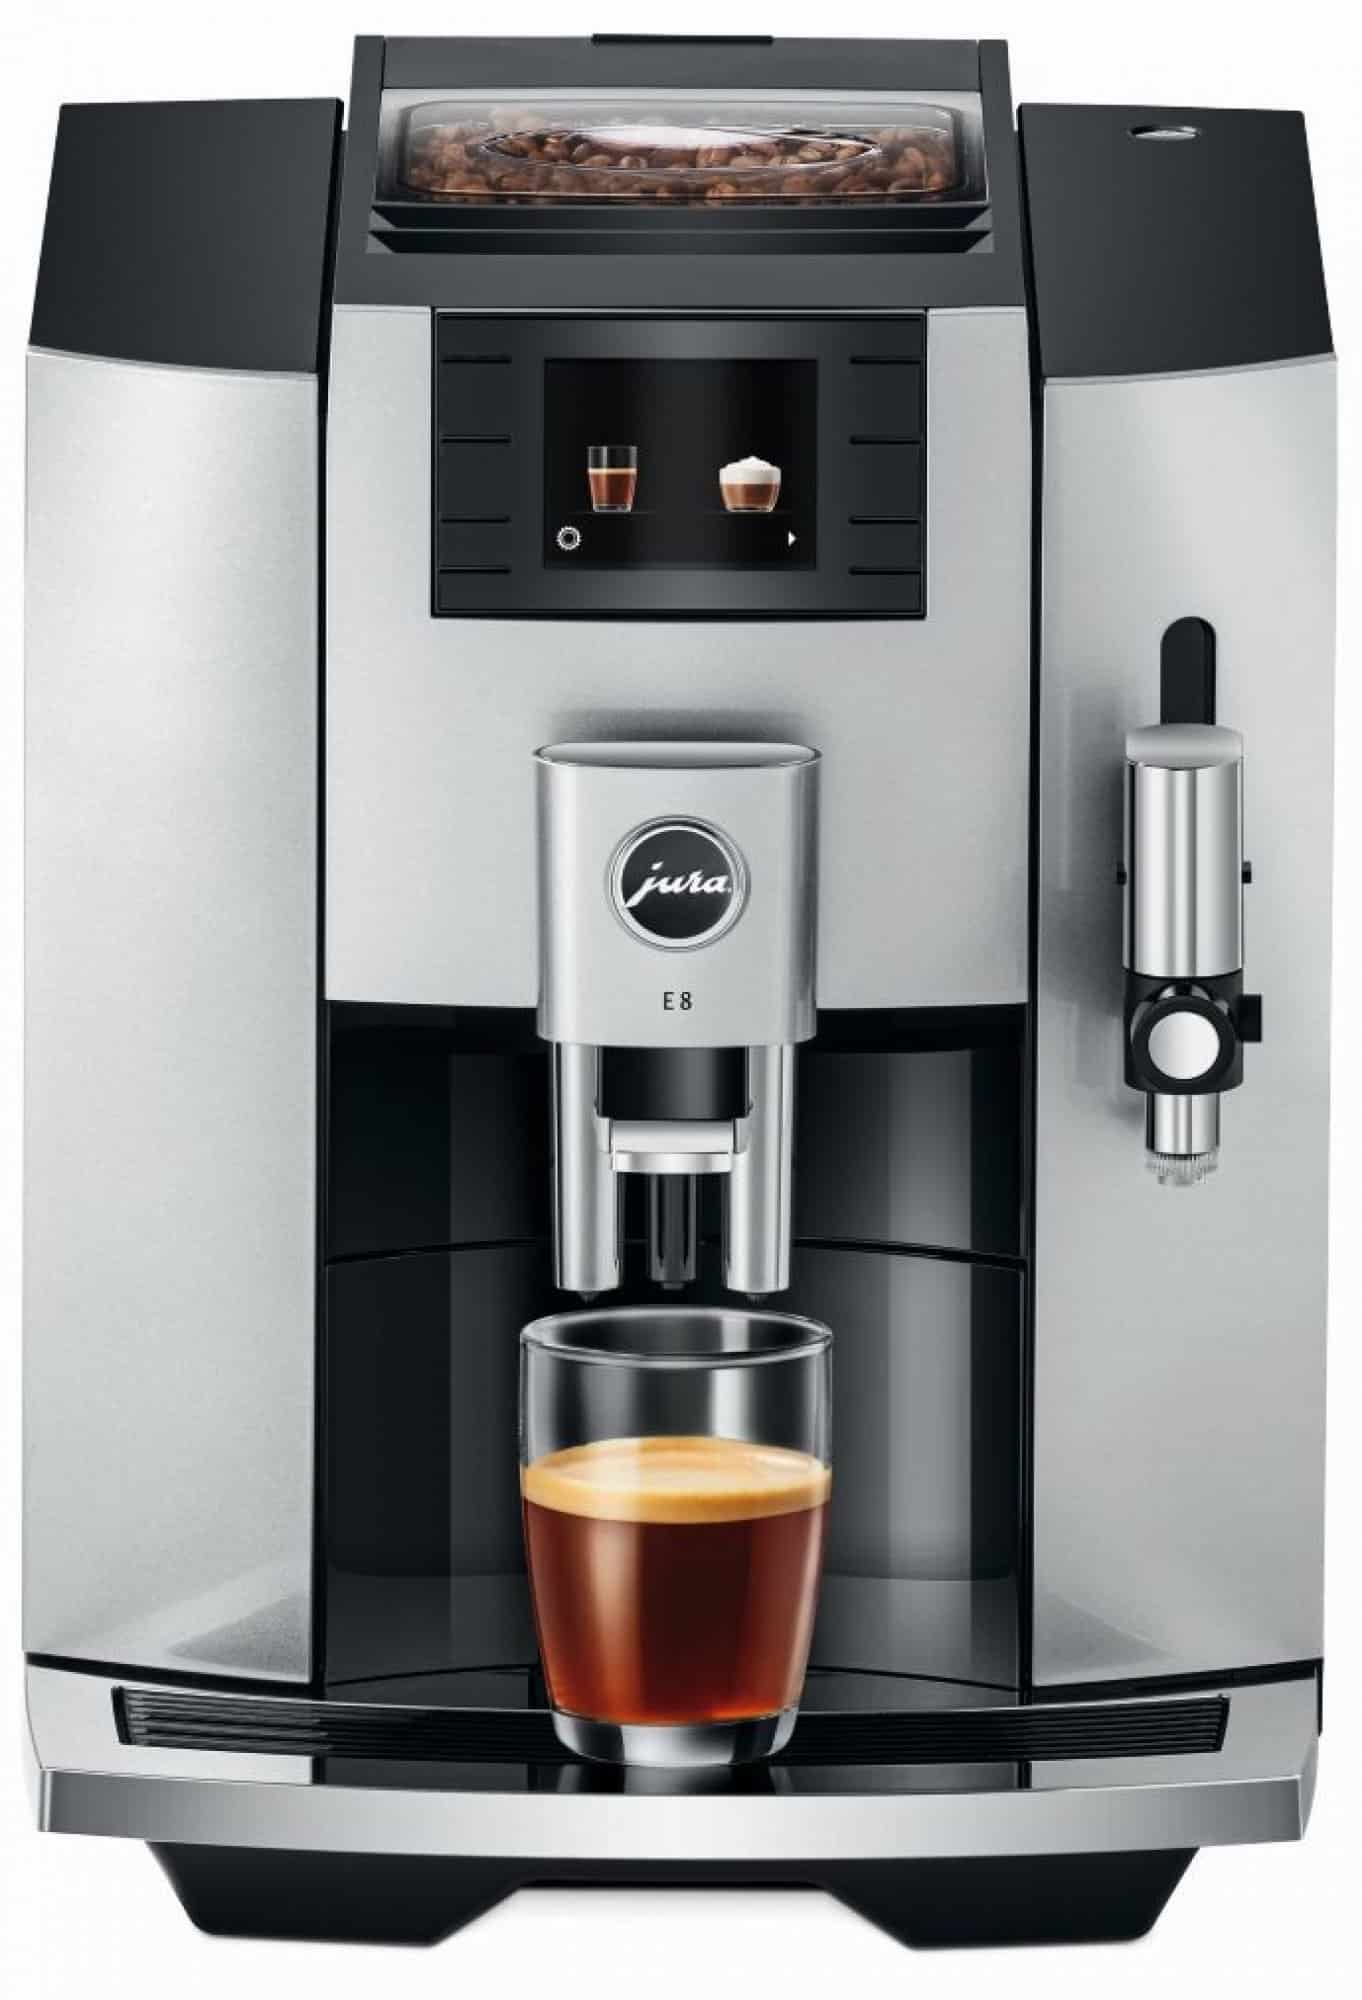 Plně automatický kávovar značky Jura.